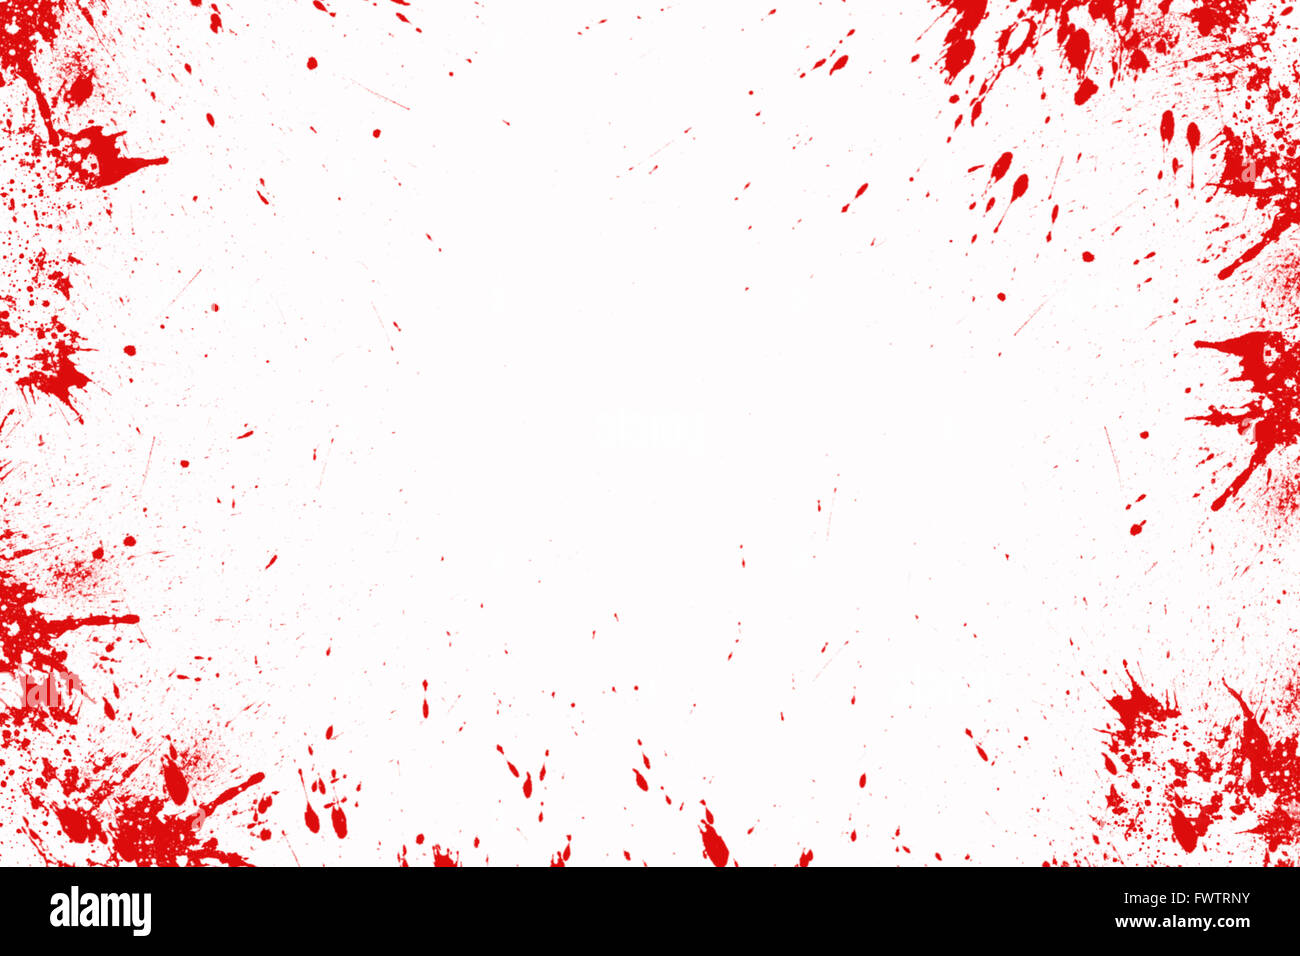 Les projections de sang devant un fond blanc, Halloween Banque D'Images